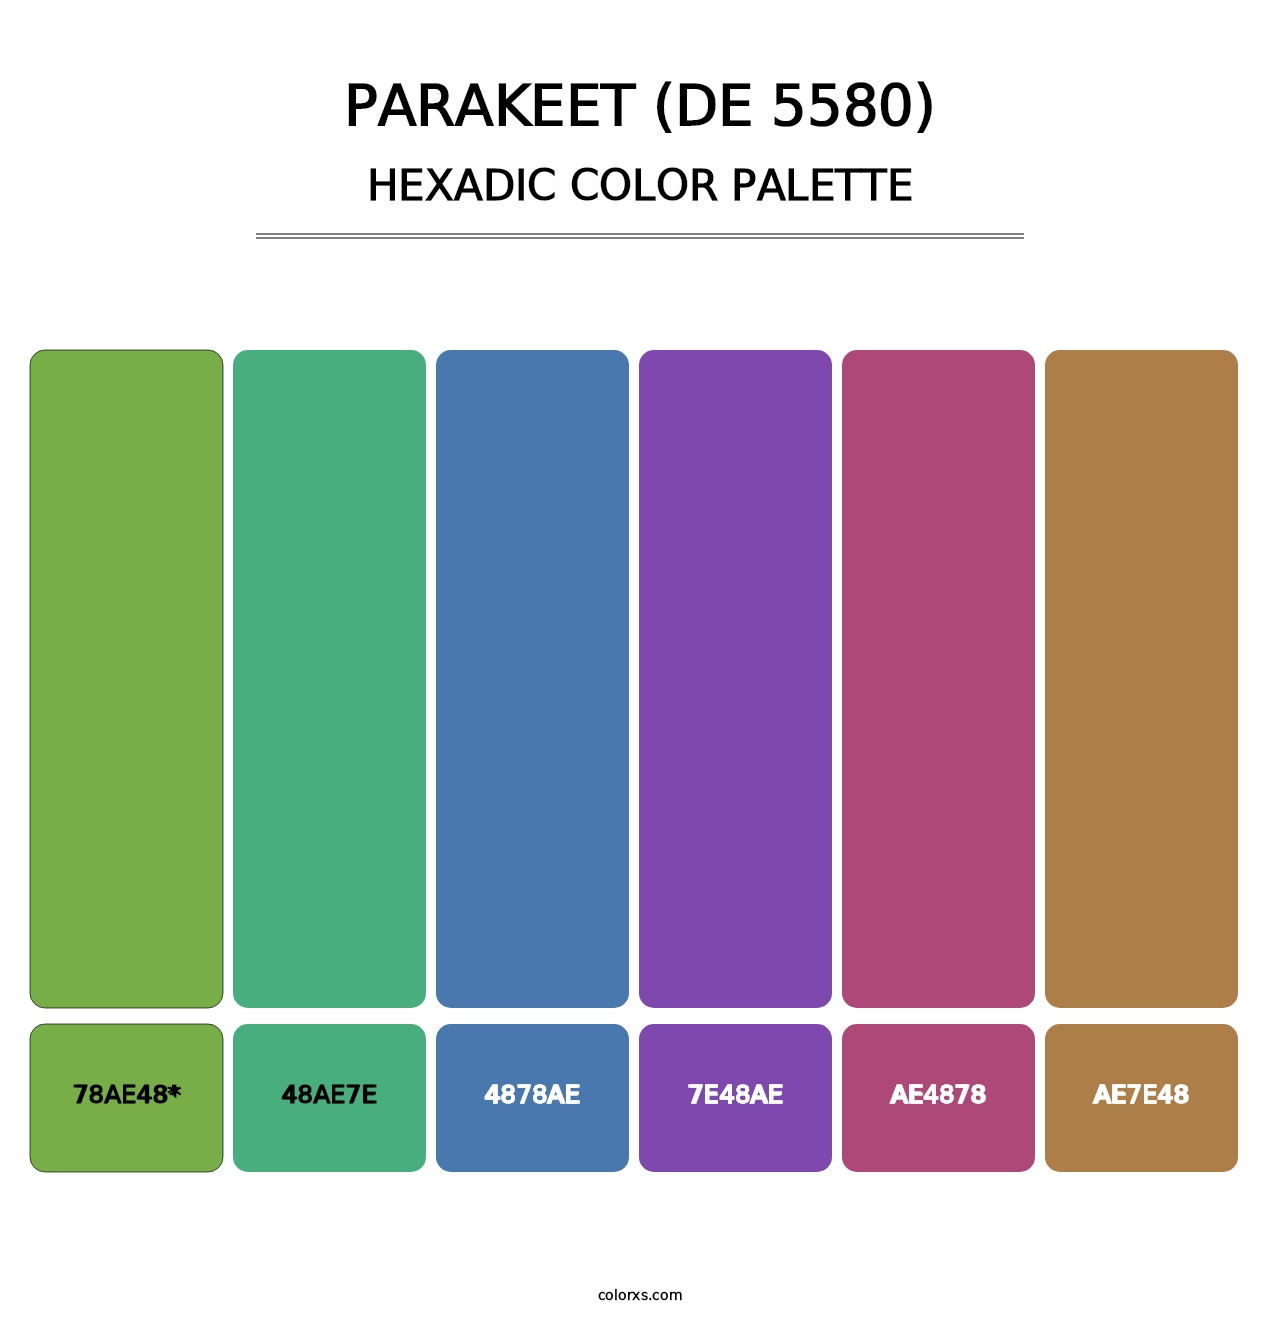 Parakeet (DE 5580) - Hexadic Color Palette